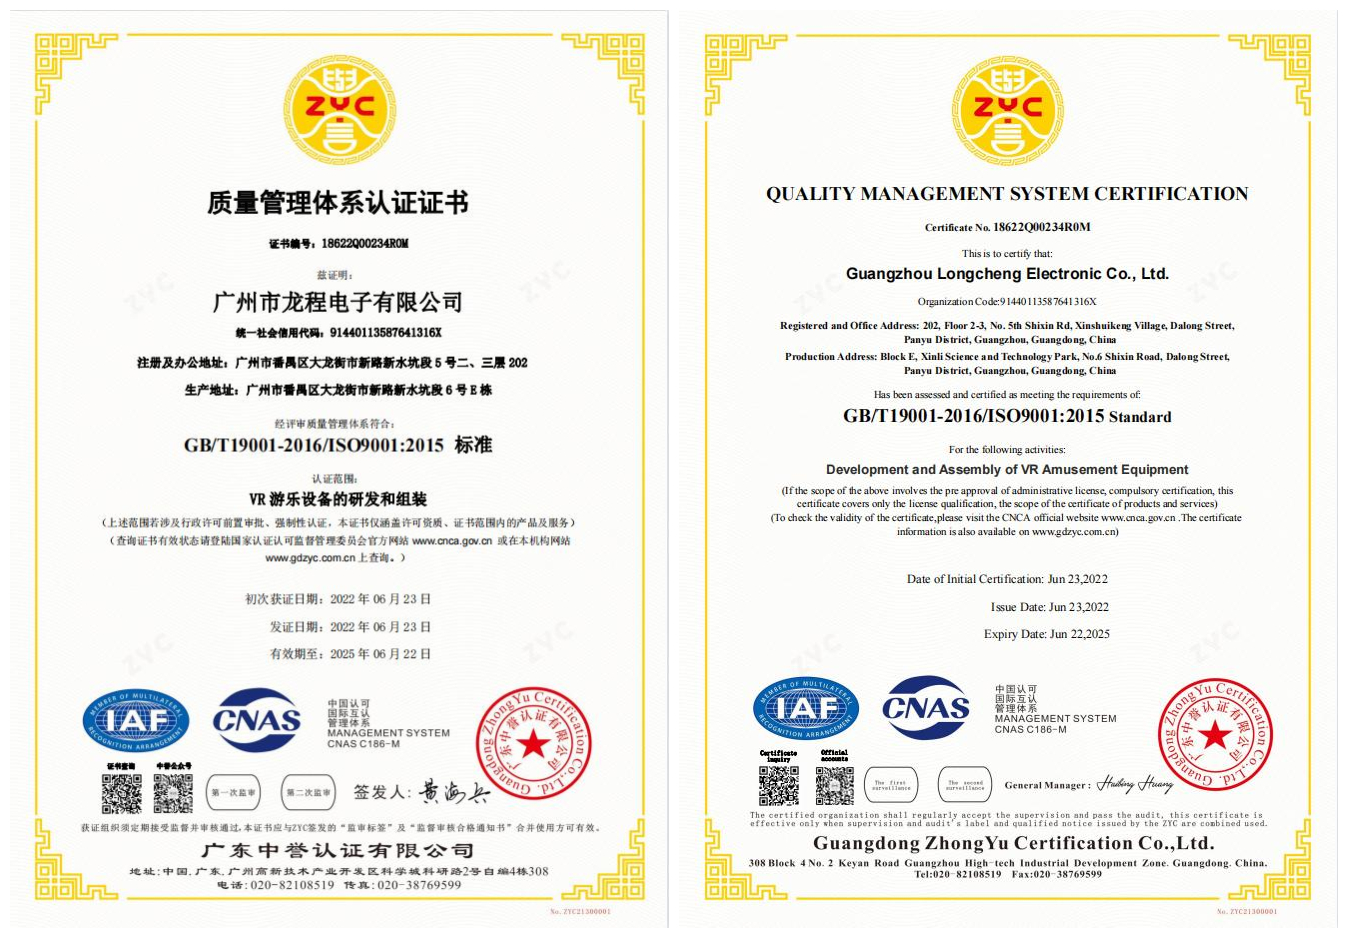 VART VR, ISO9001 kalite yönetim sistemi sertifikasını kazandı